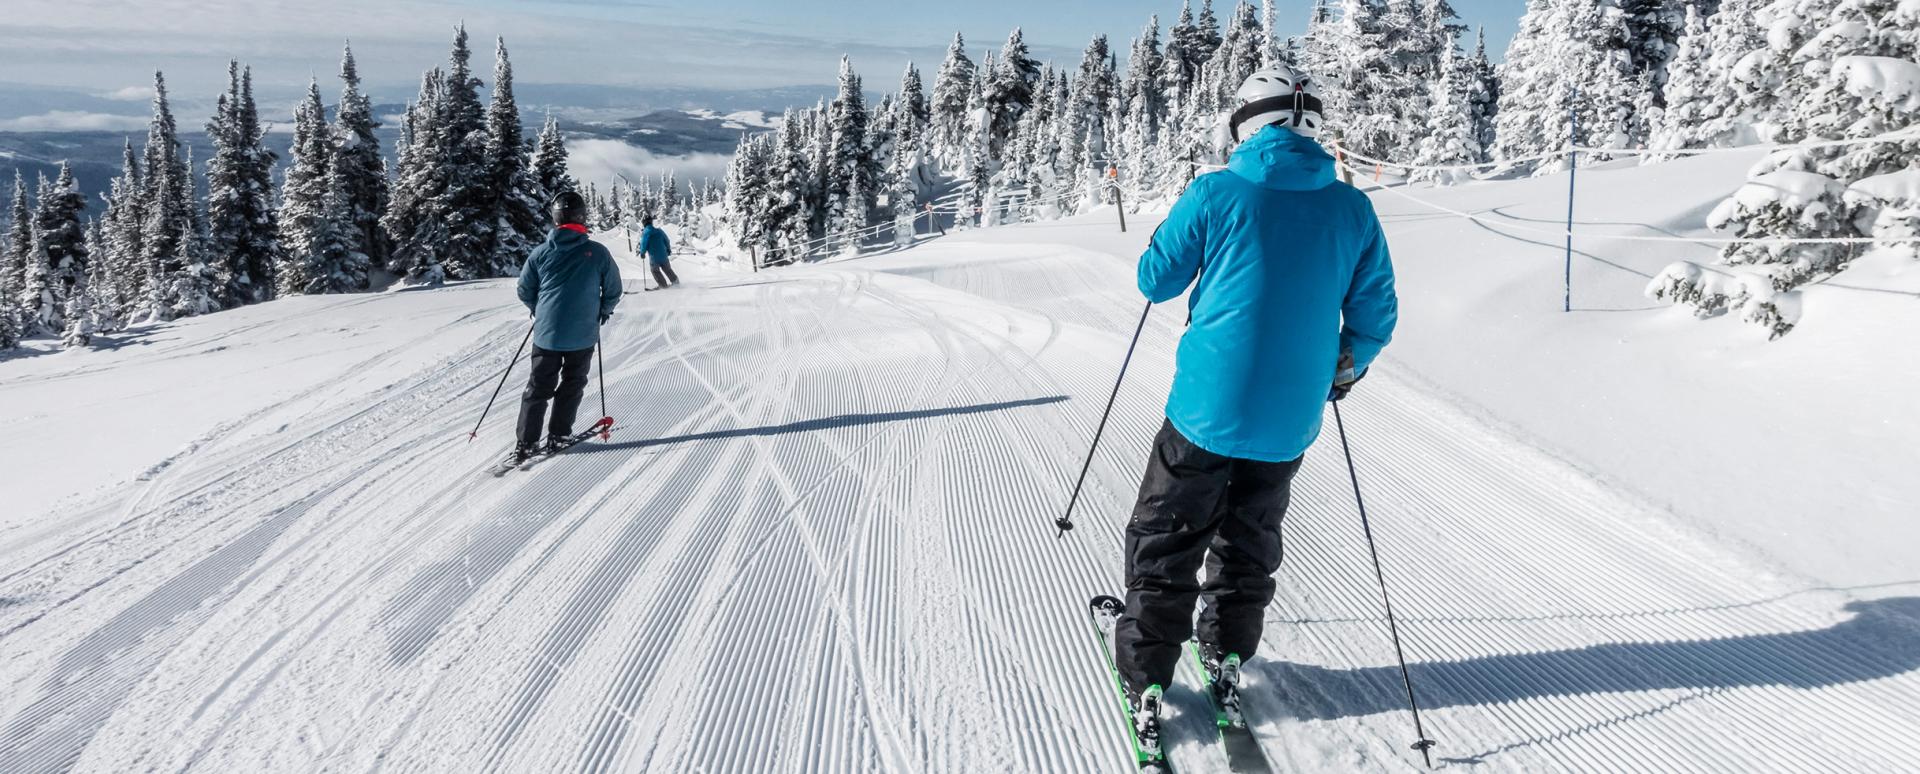 Trois personnes sont en train de descendre une piste à ski